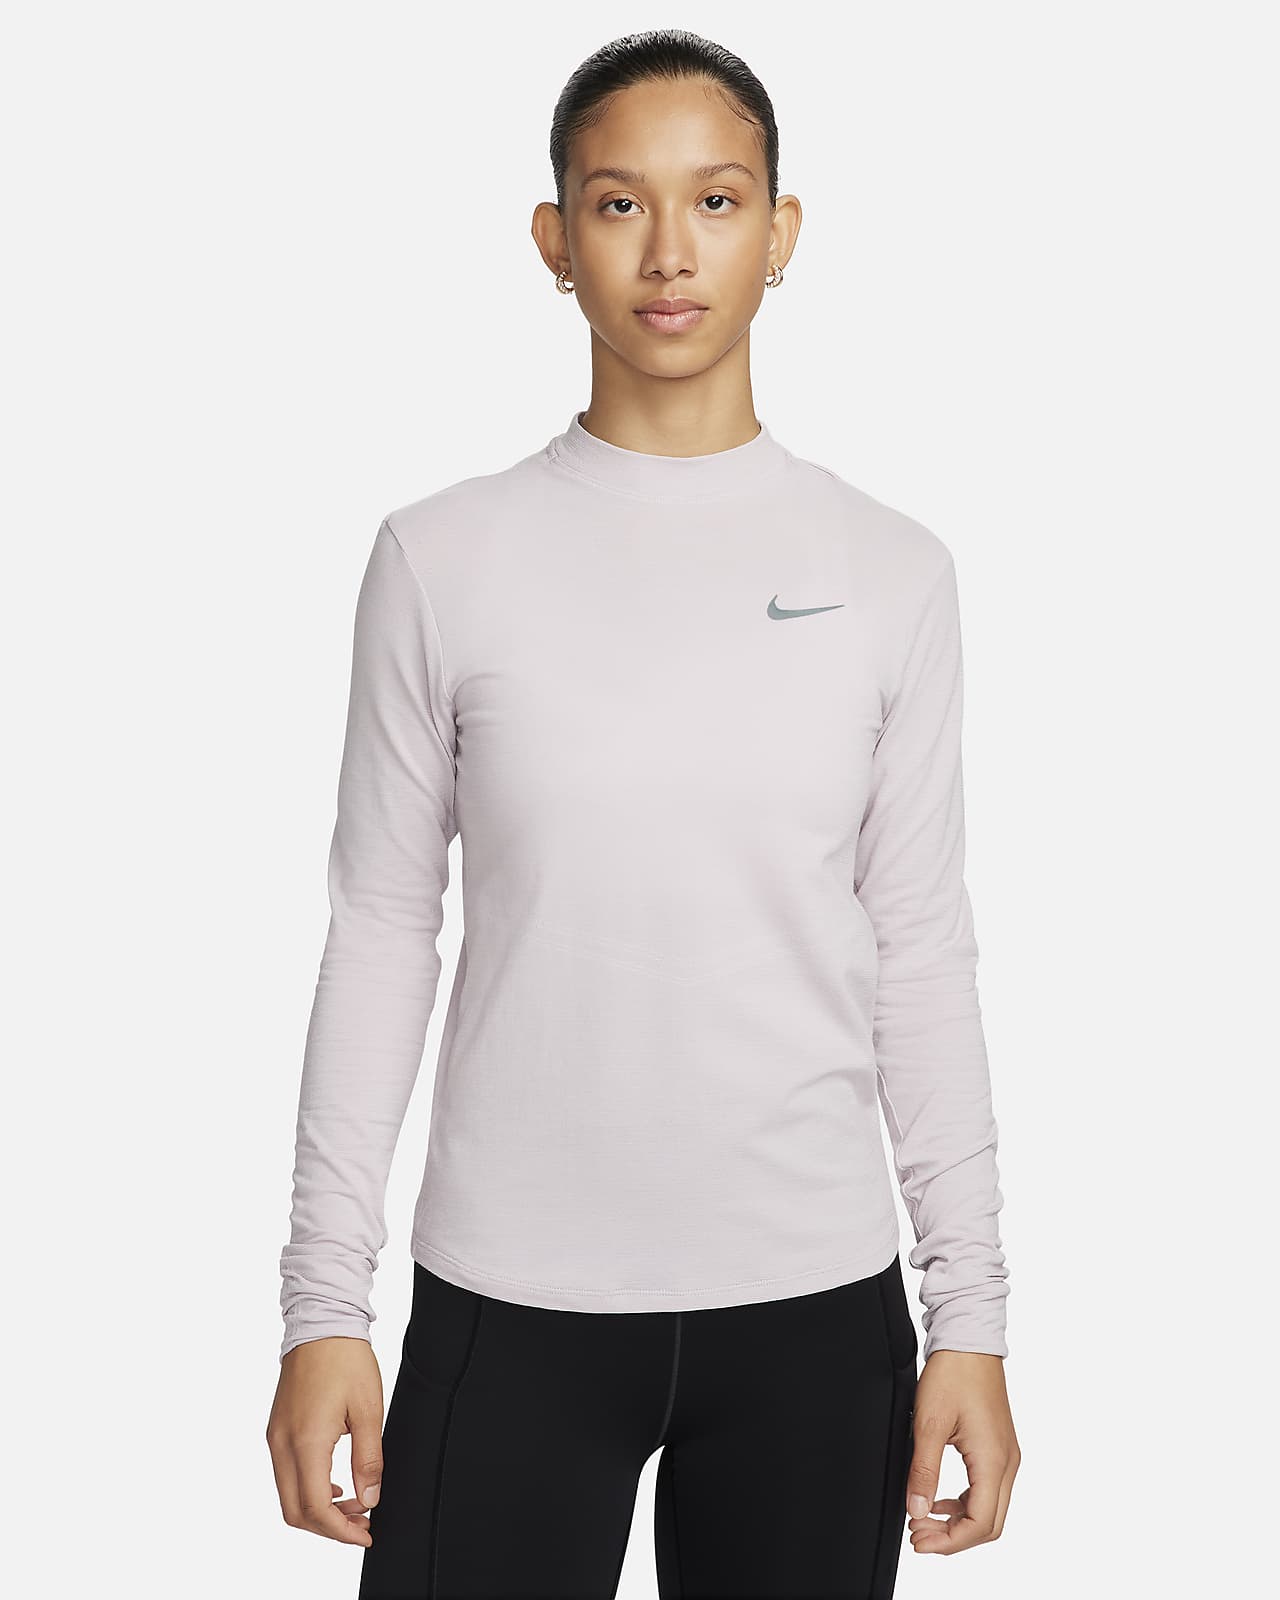 Dámské běžecké tričko Dri-FIT Nike Swift se stojáčkem a dlouhým rukávem